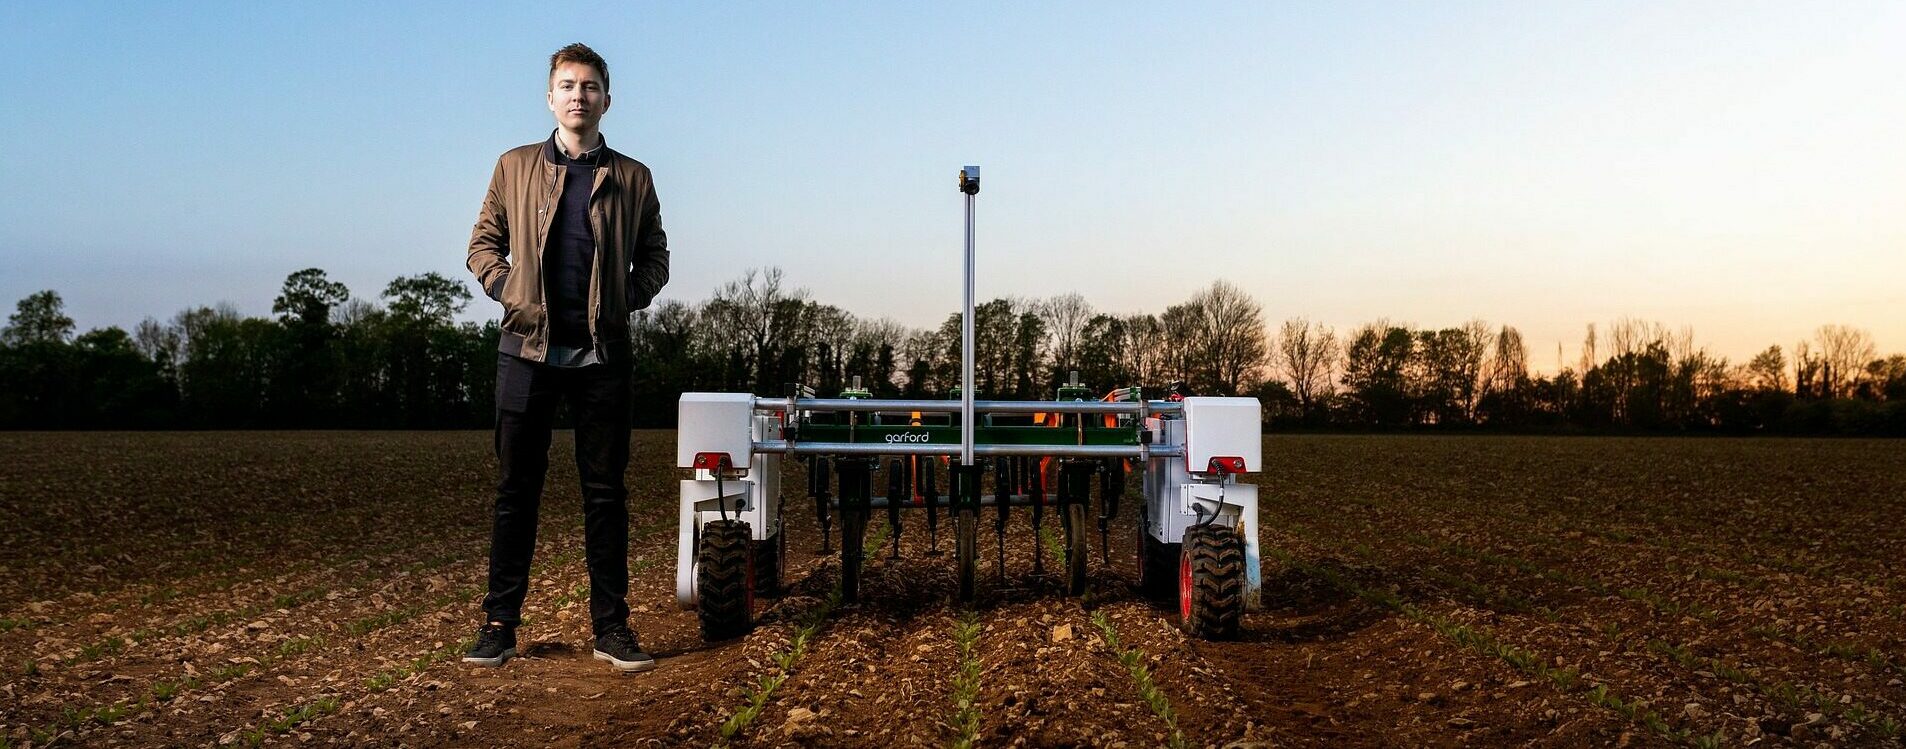 Agricoltura 4.0: dai robot contadini alle trappole intelligenti